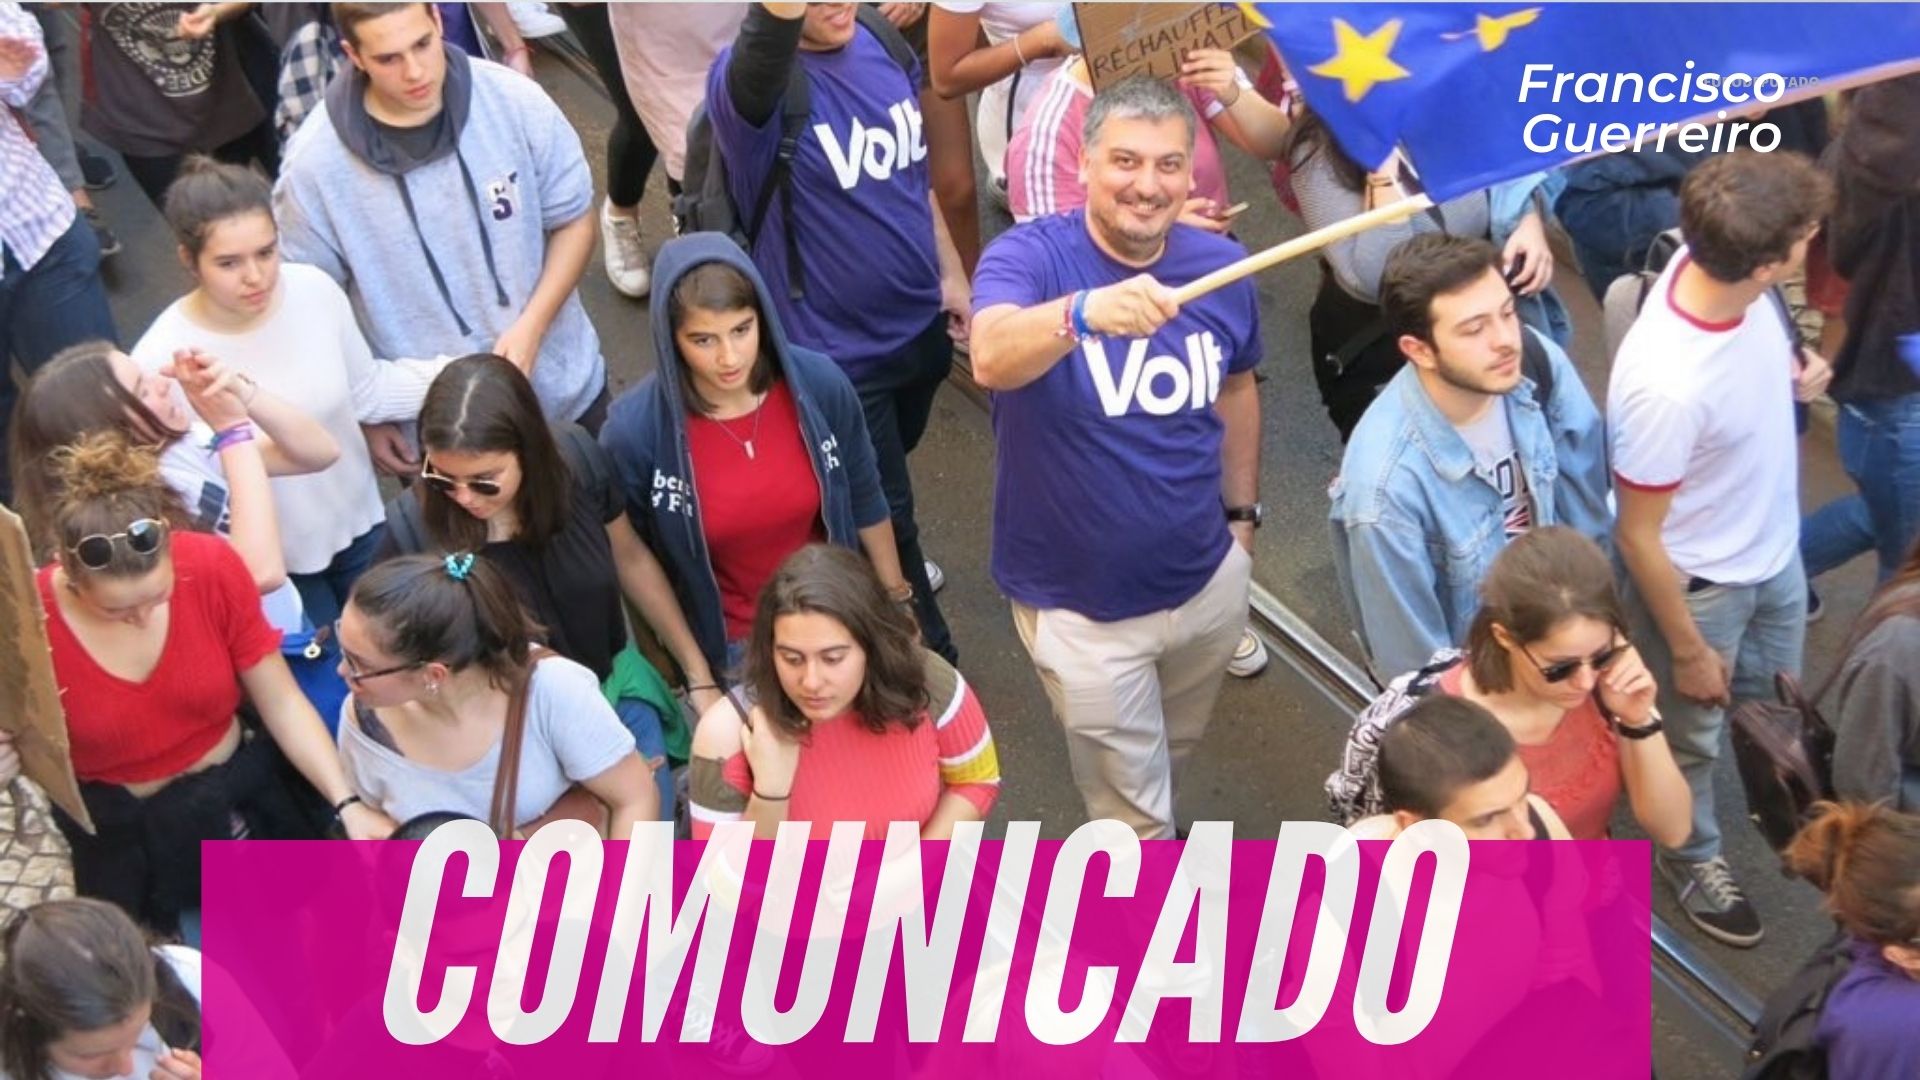 Autárquicas 2021: Francisco Guerreiro apoia candidatura do partido Volt em Lisboa